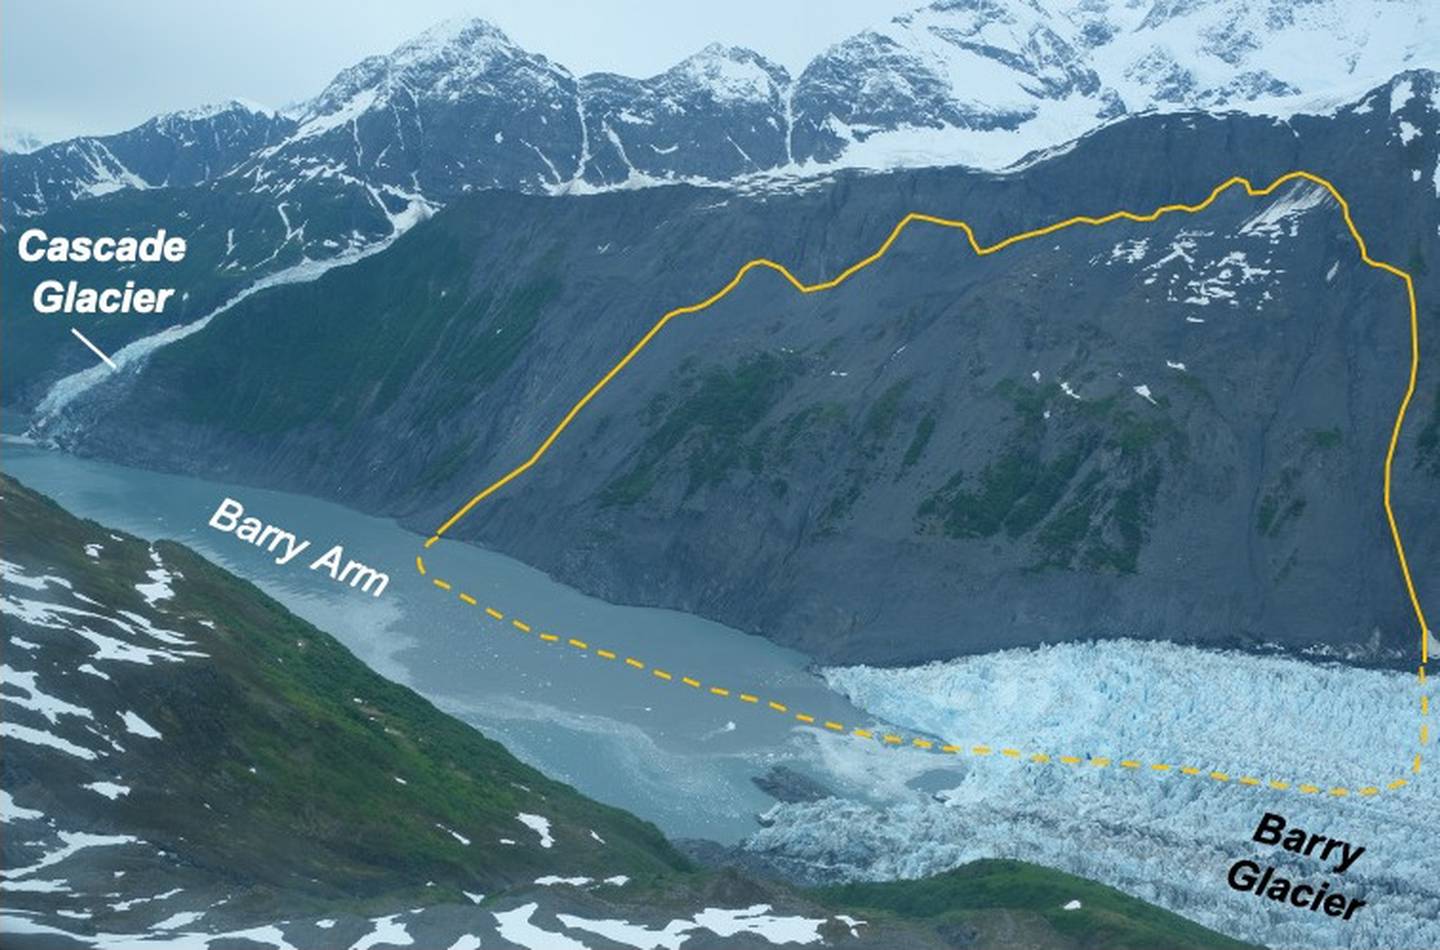 Barry Arm Landslide, Département des ressources naturelles de l'Alaska, Division des études géologiques et géophysiques